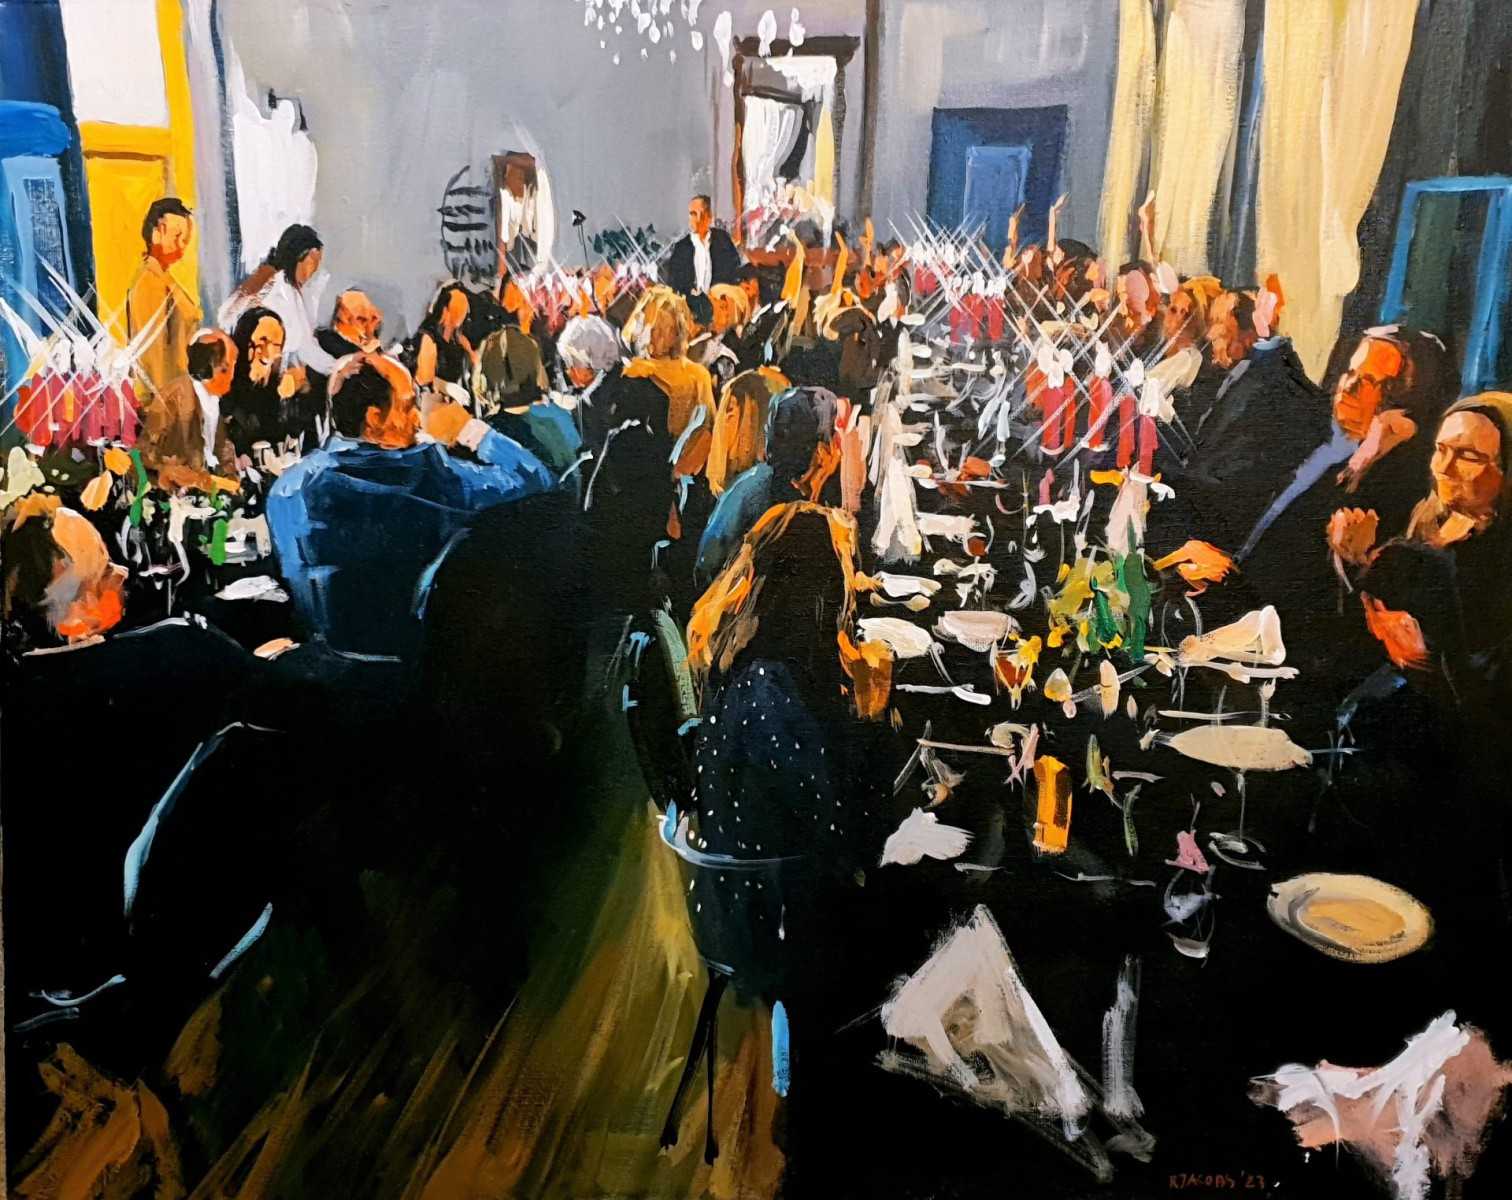 Laat je verrassen door de culinaire hoogstandjes terwijl Rob Jacobs live schildert tijdens het diner in Brakel, Gelderland.